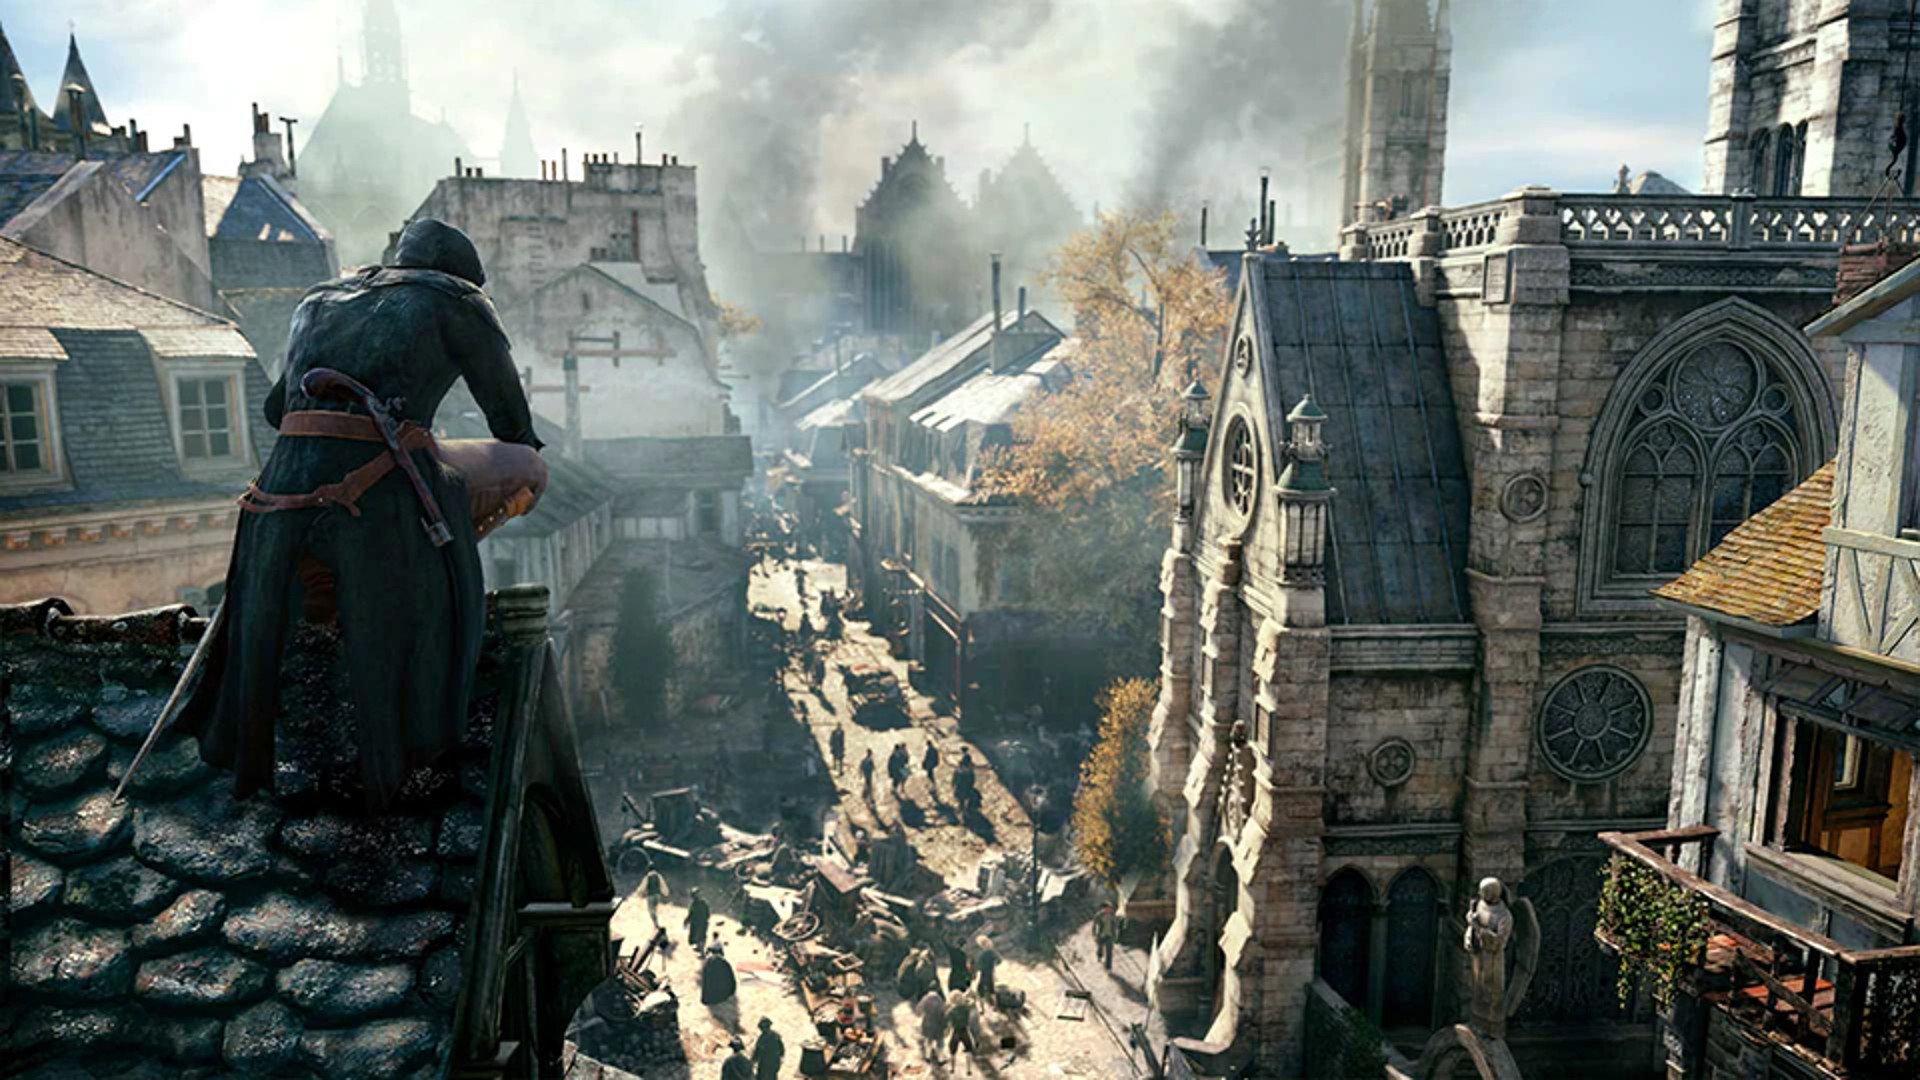 มีข้อมูลหลุด Assassin’s Creed ภาคใหม่ ตัวเกมมีความคล้าย Hitman